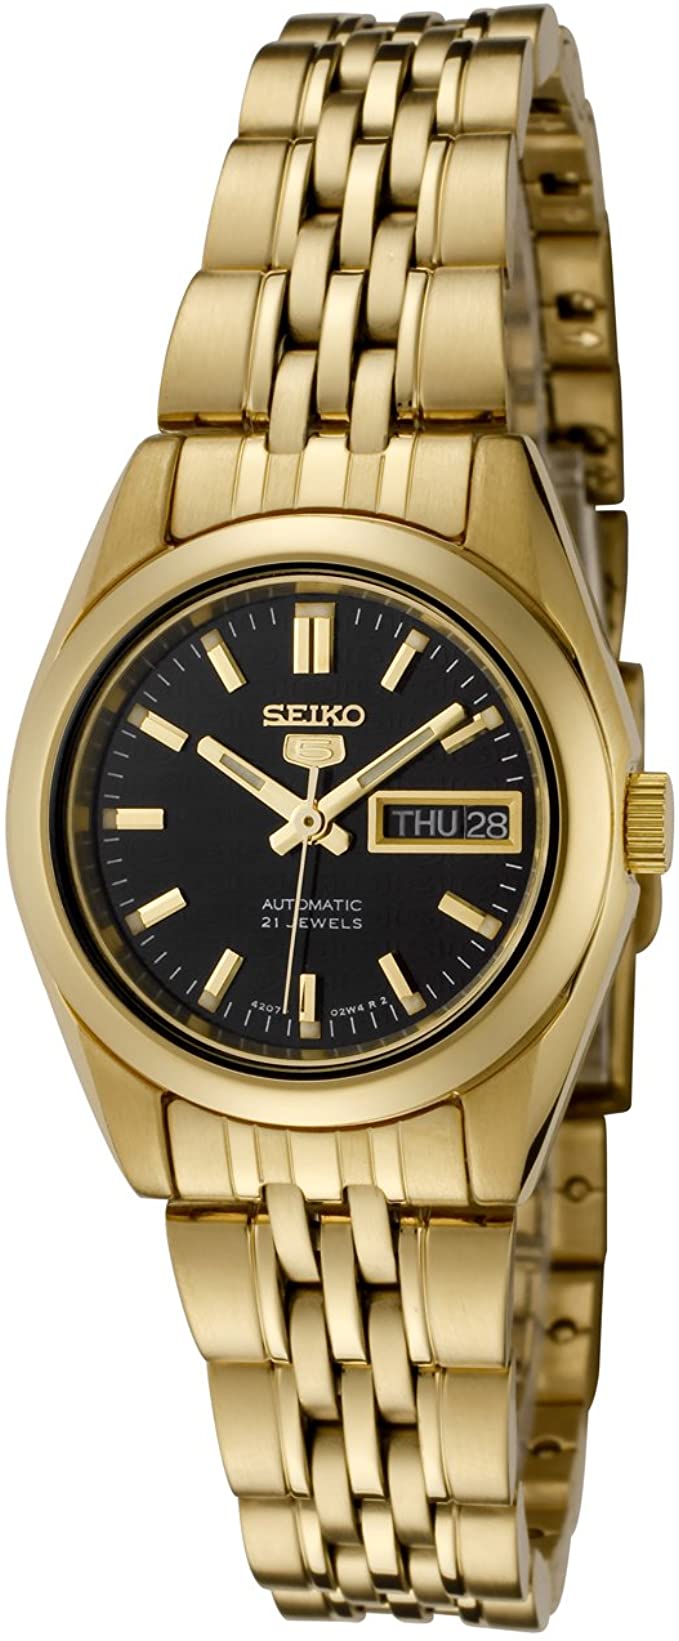 Seiko Women's Seiko 5 Automatic Black Dial Gold Tone Stainless Steel Watch